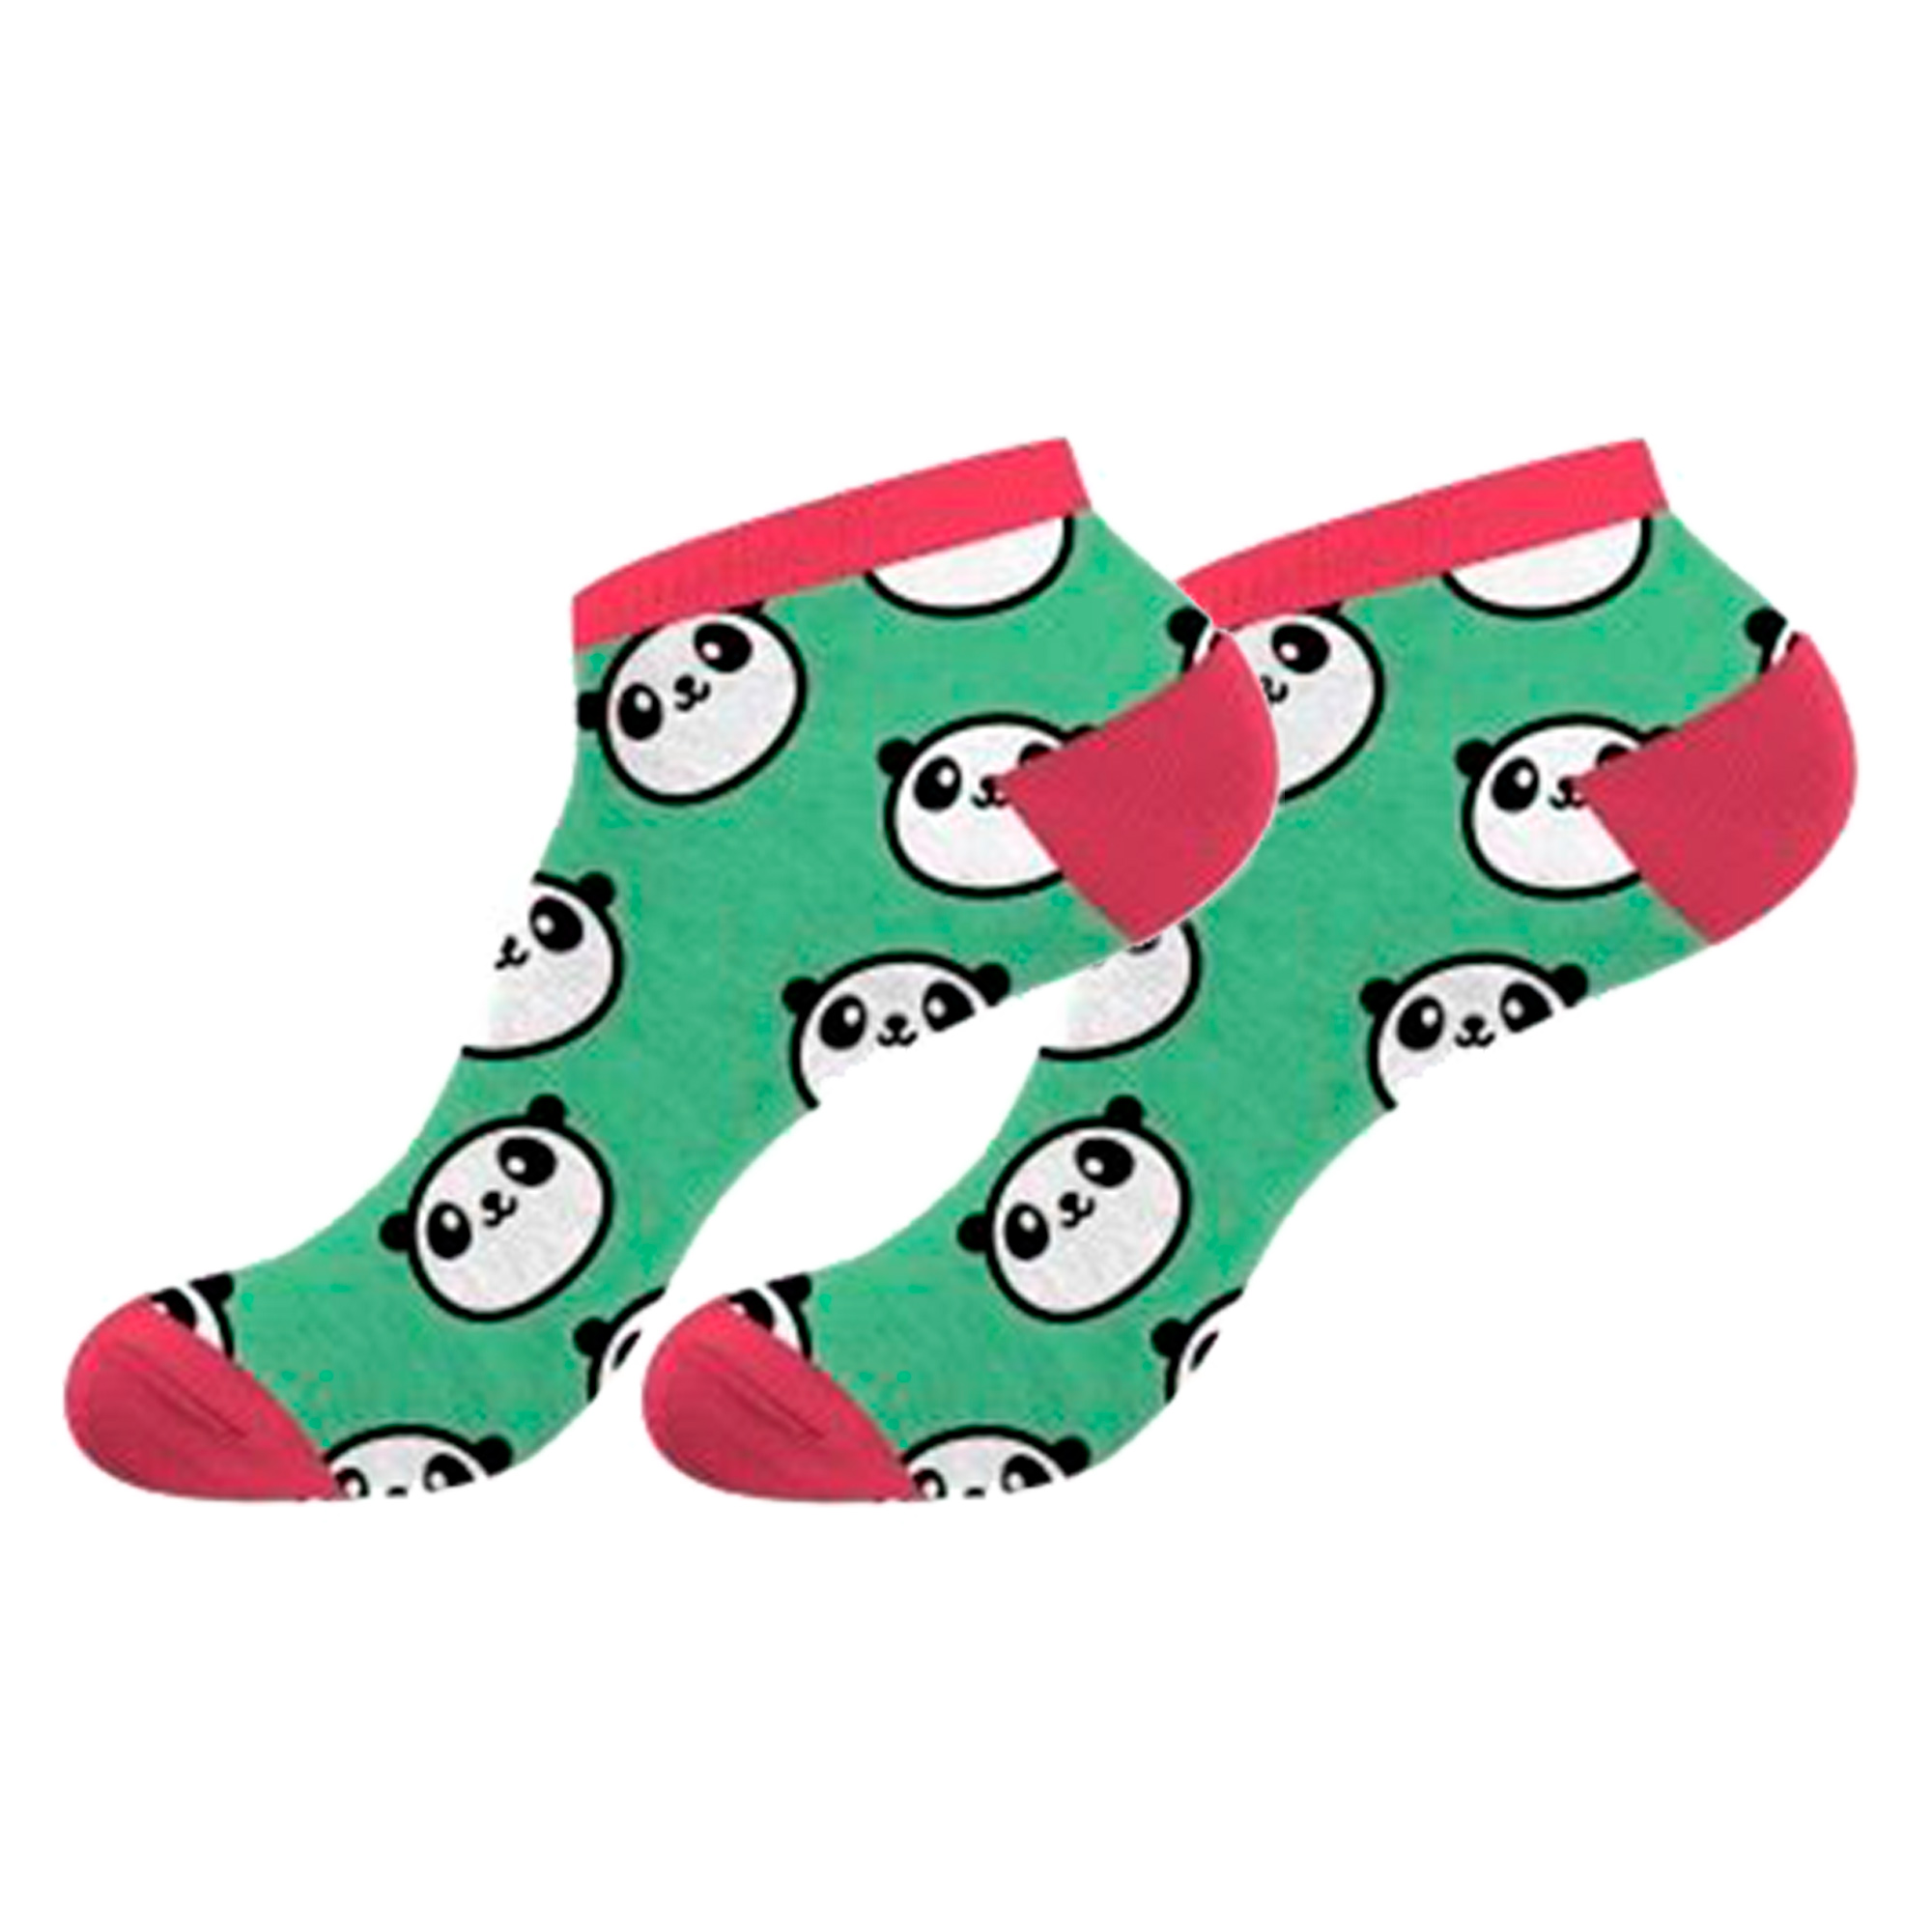 Par De Calcetines Crazy Socks Para Mujer Panda - multicolor - 